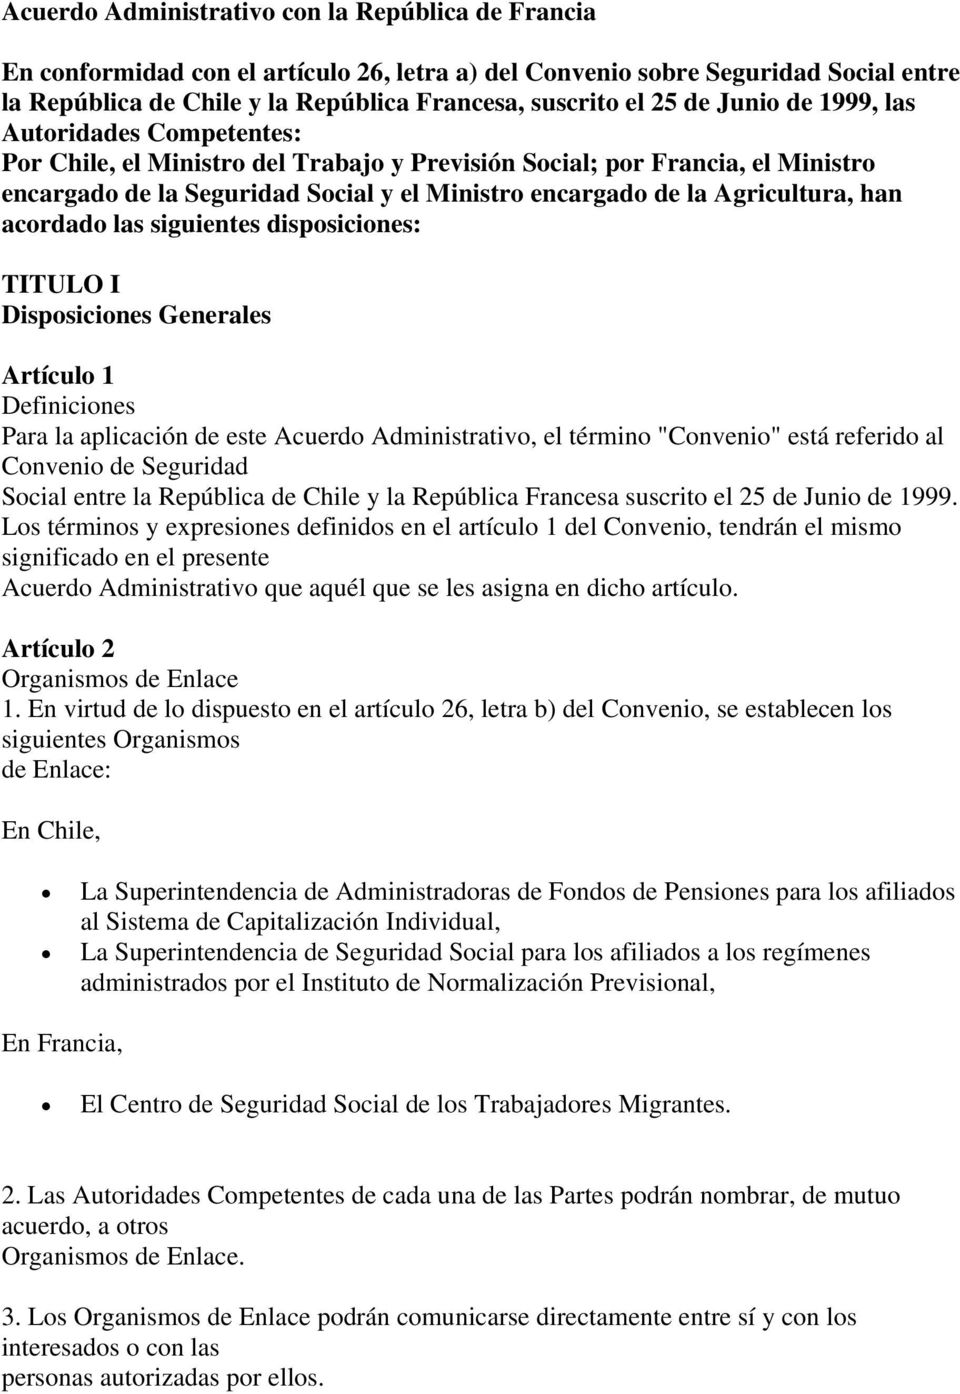 Agricultura, han acordado las siguientes disposiciones: TITULO I Disposiciones Generales Artículo 1 Definiciones Para la aplicación de este Acuerdo Administrativo, el término "Convenio" está referido